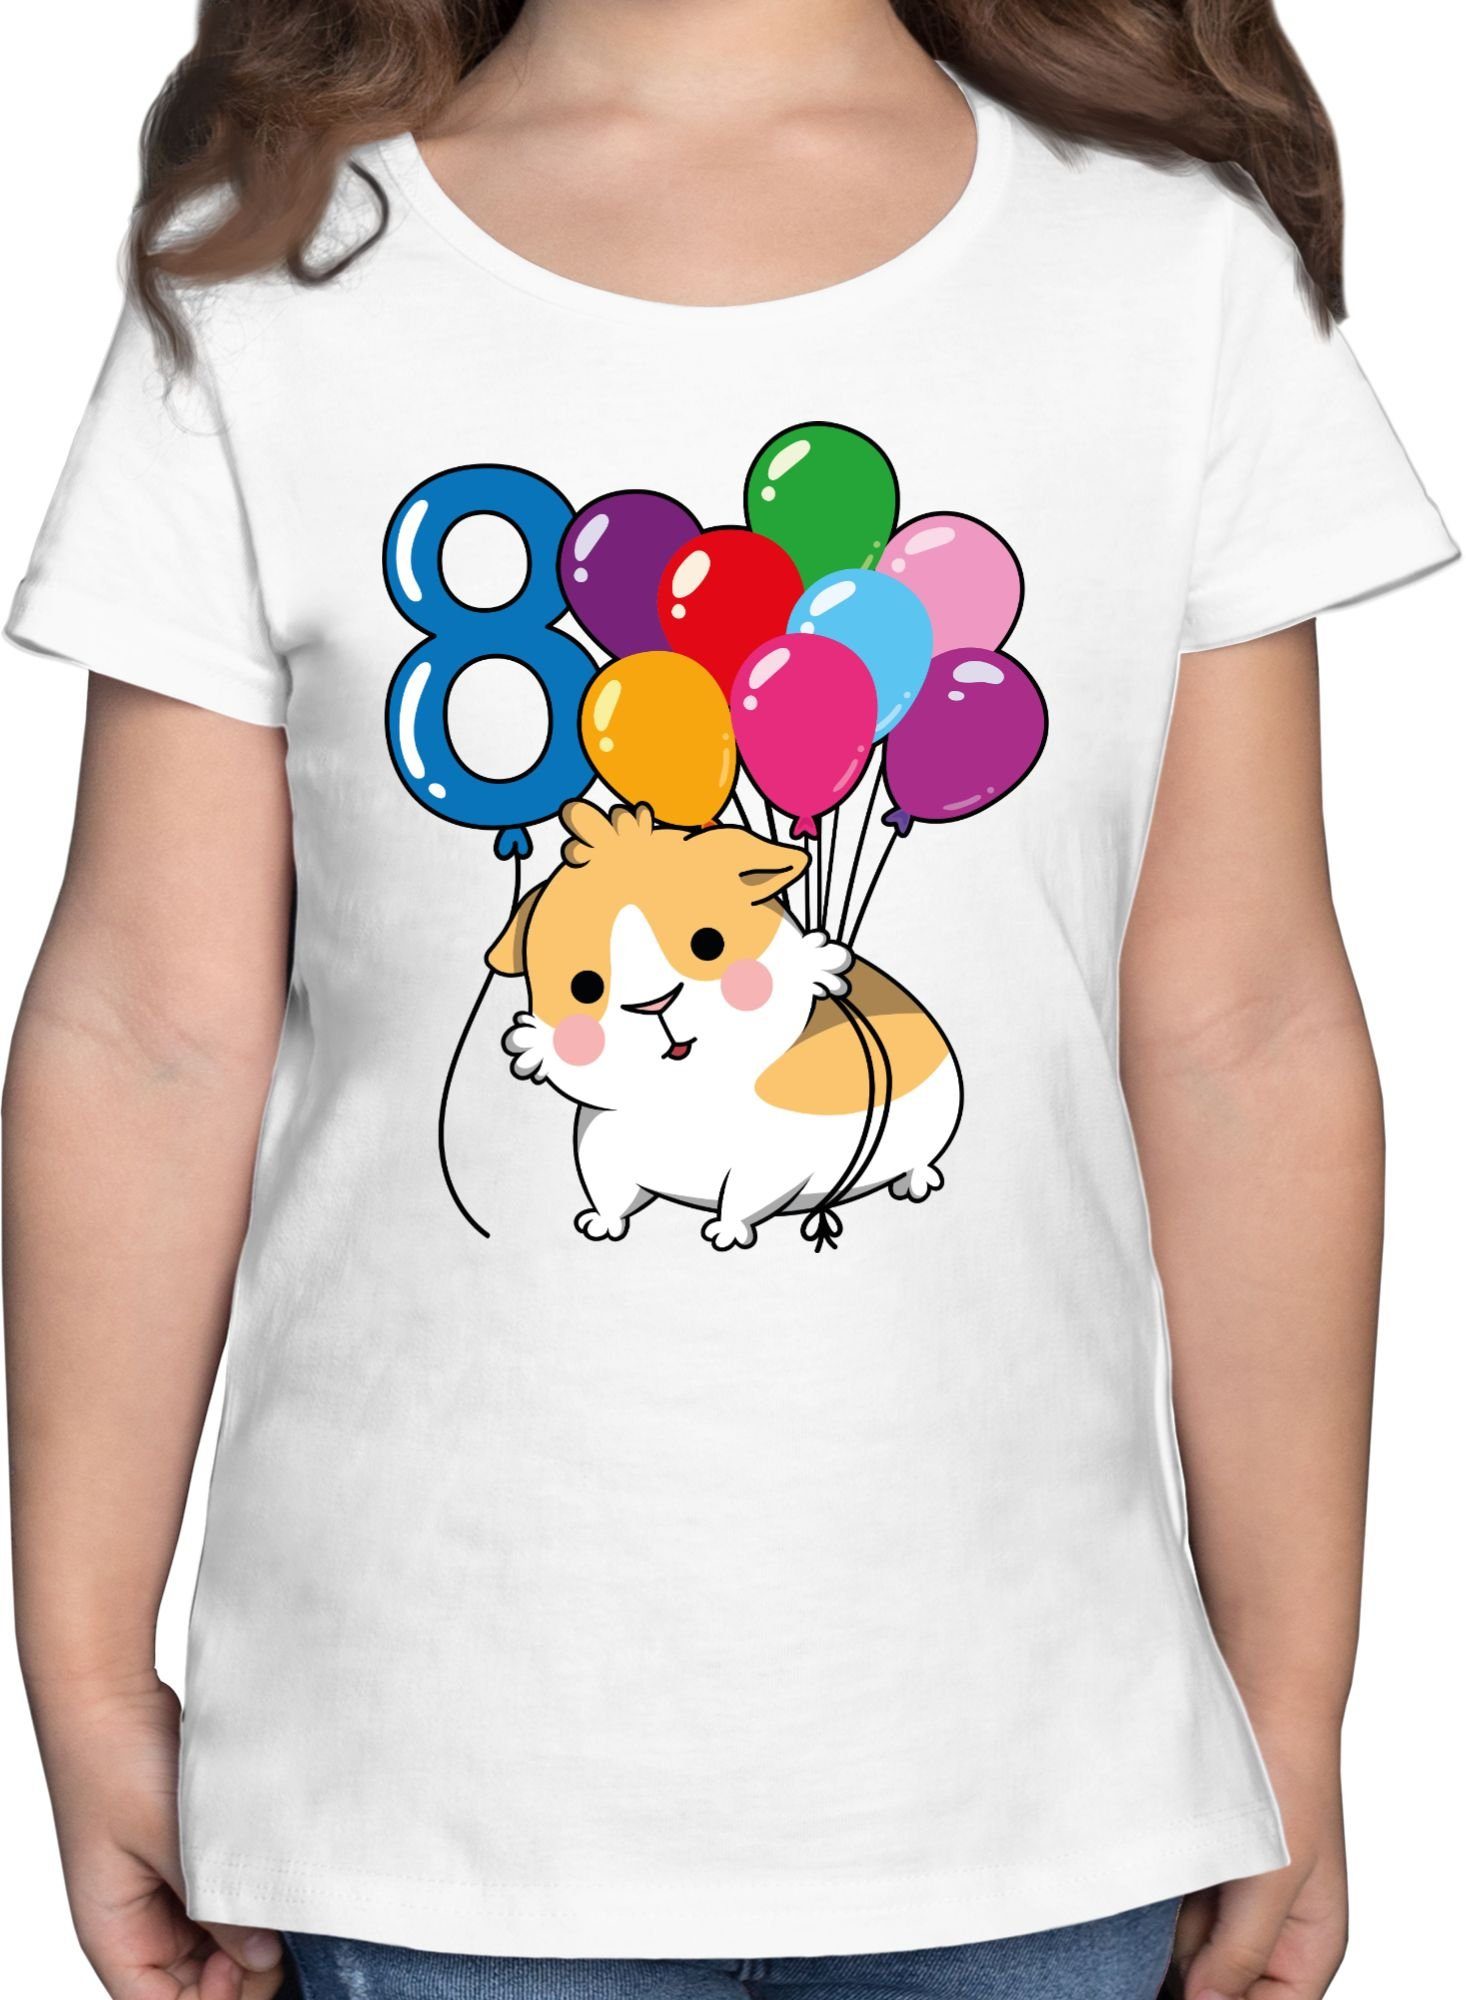 Shirtracer T-Shirt Meerschweinchen Acht - 8. Kinder - T-Shirt 1 t Mädchen mädels Geburtstag shirt kindershirt Weiß kinder - - tshirt meerschweinchen